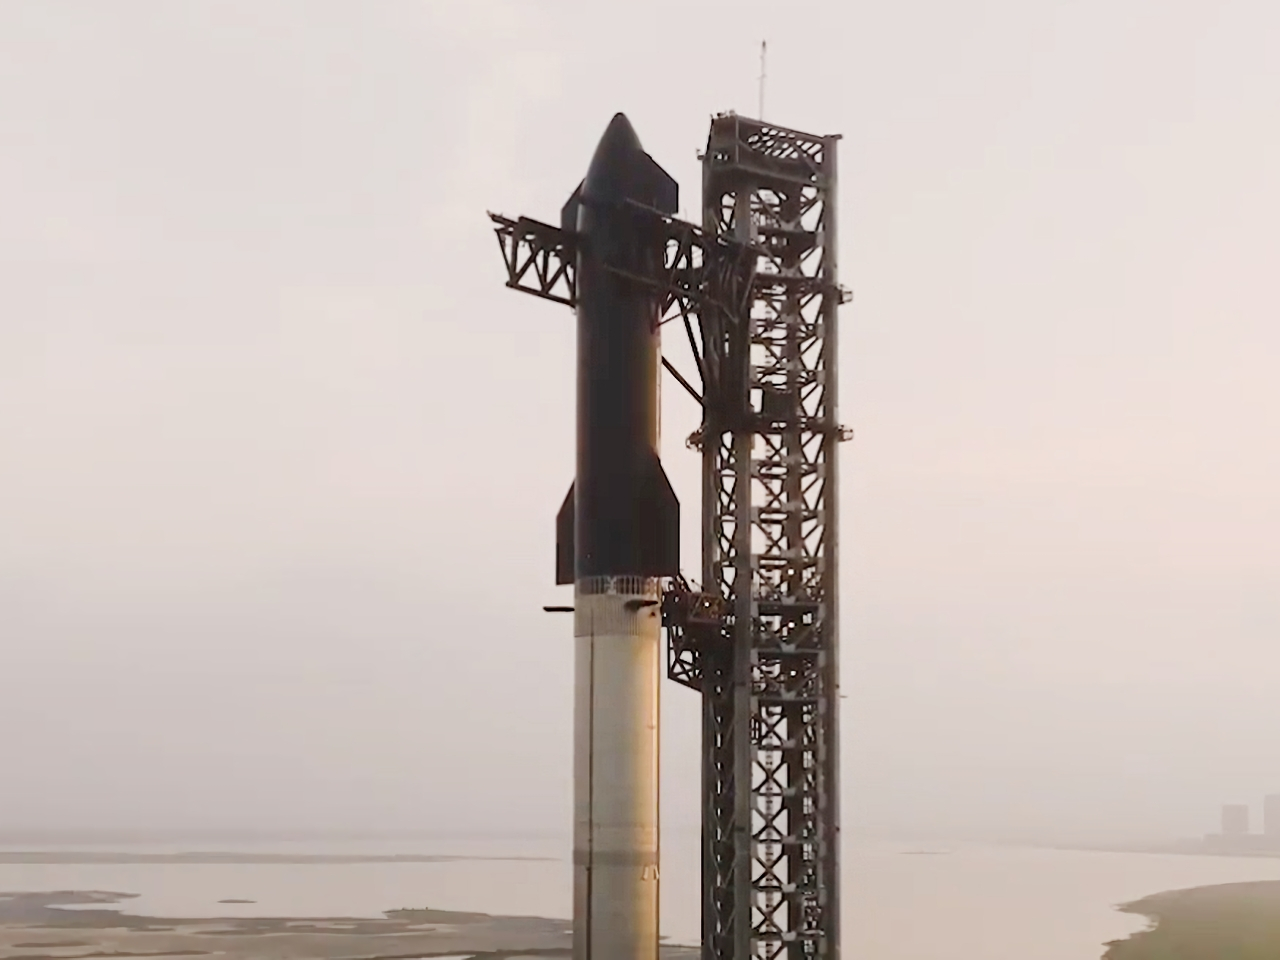 スペースX、「スターシップ」打ち上げでFAAから承認--6日午後9時予定